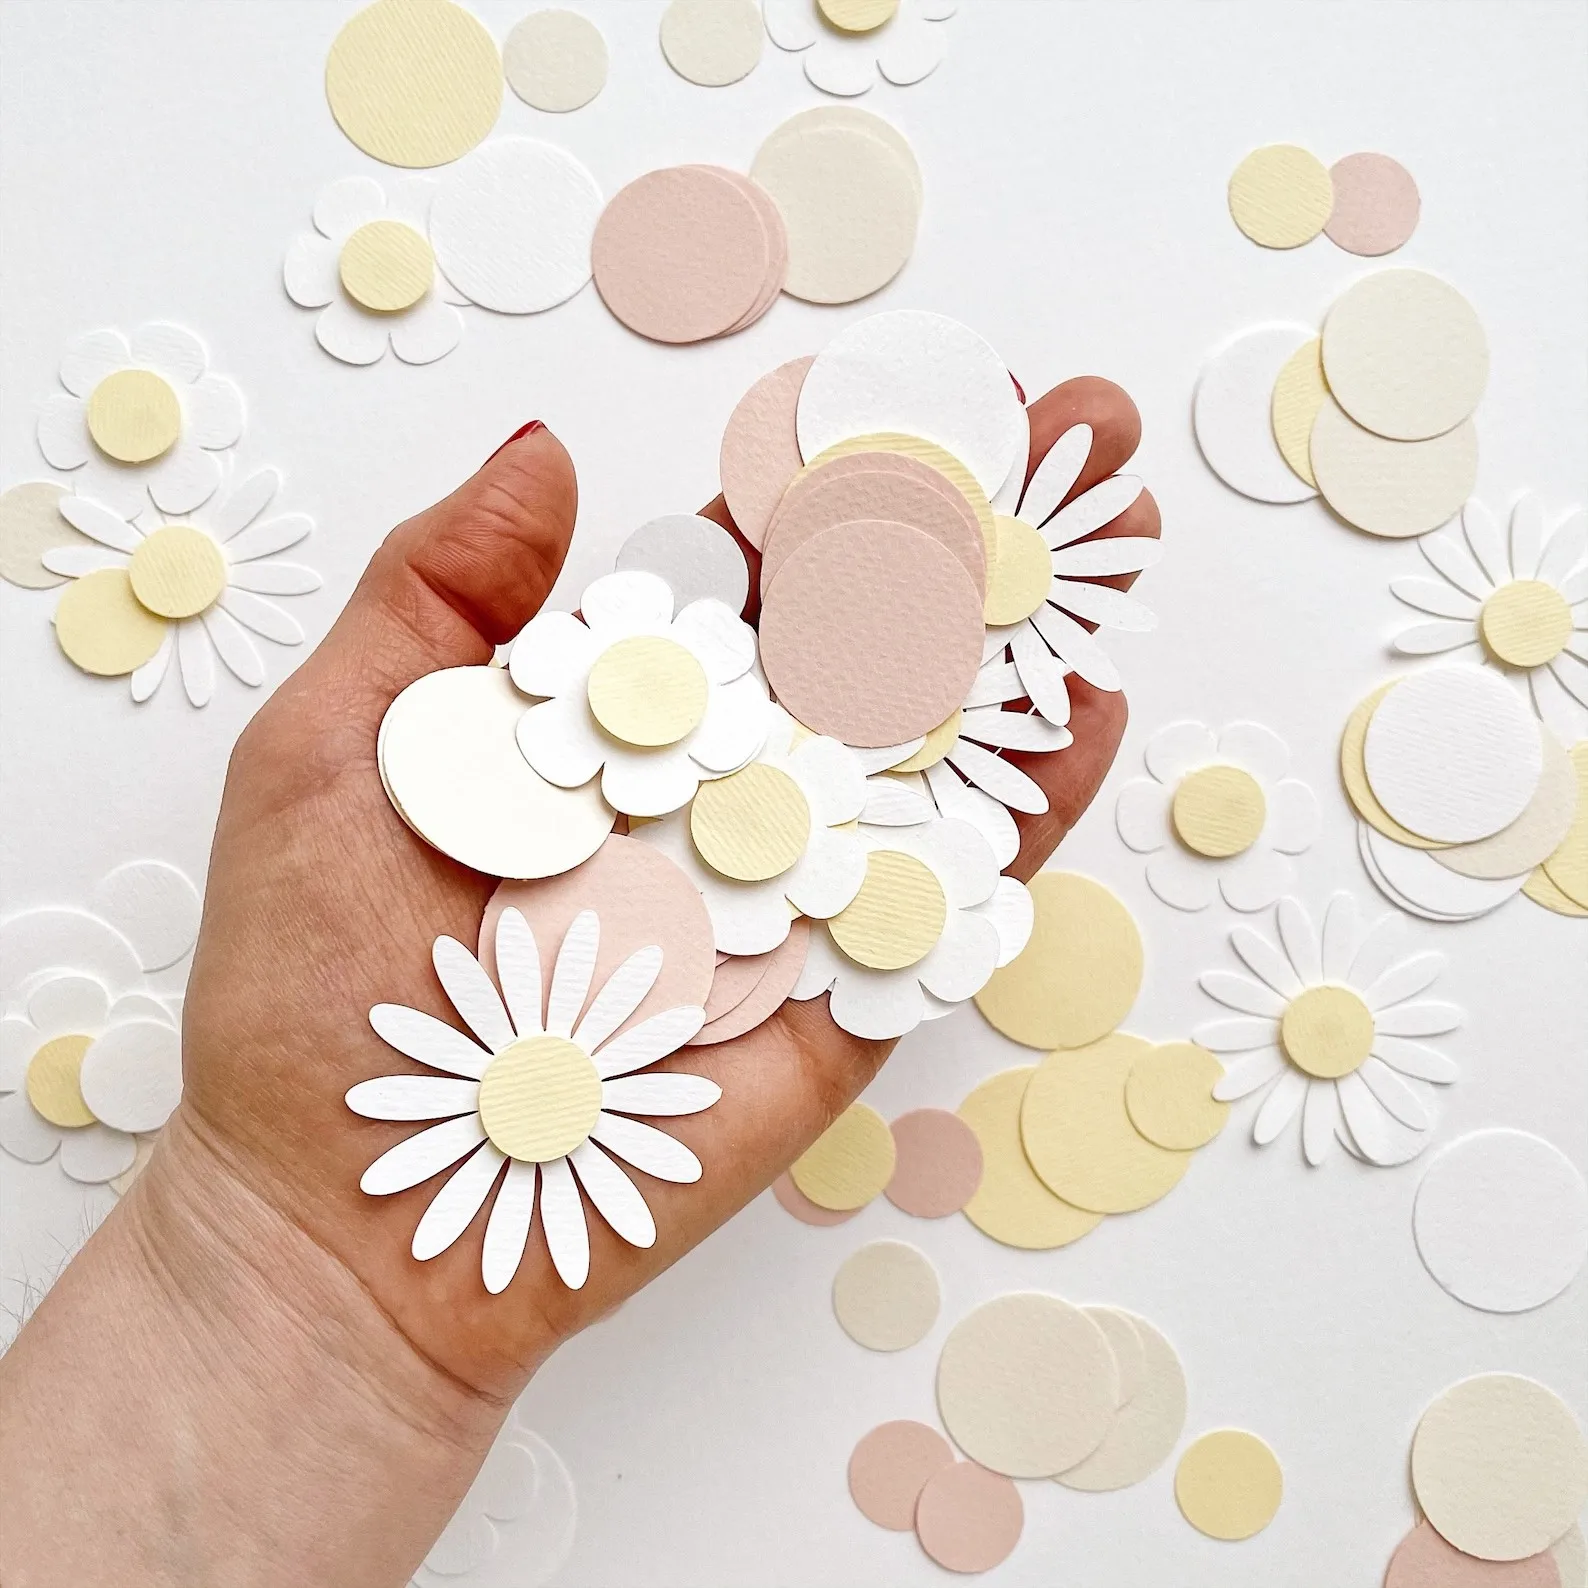 1 Torba Tatlı Yuvarlak Papatya Çiçek Kağıt Konfeti Düğün Çiçek Masa Dağılım Bebek Duş Doğum Günü Partisi Hediye Kutusu Süslemeleri Kaynağı